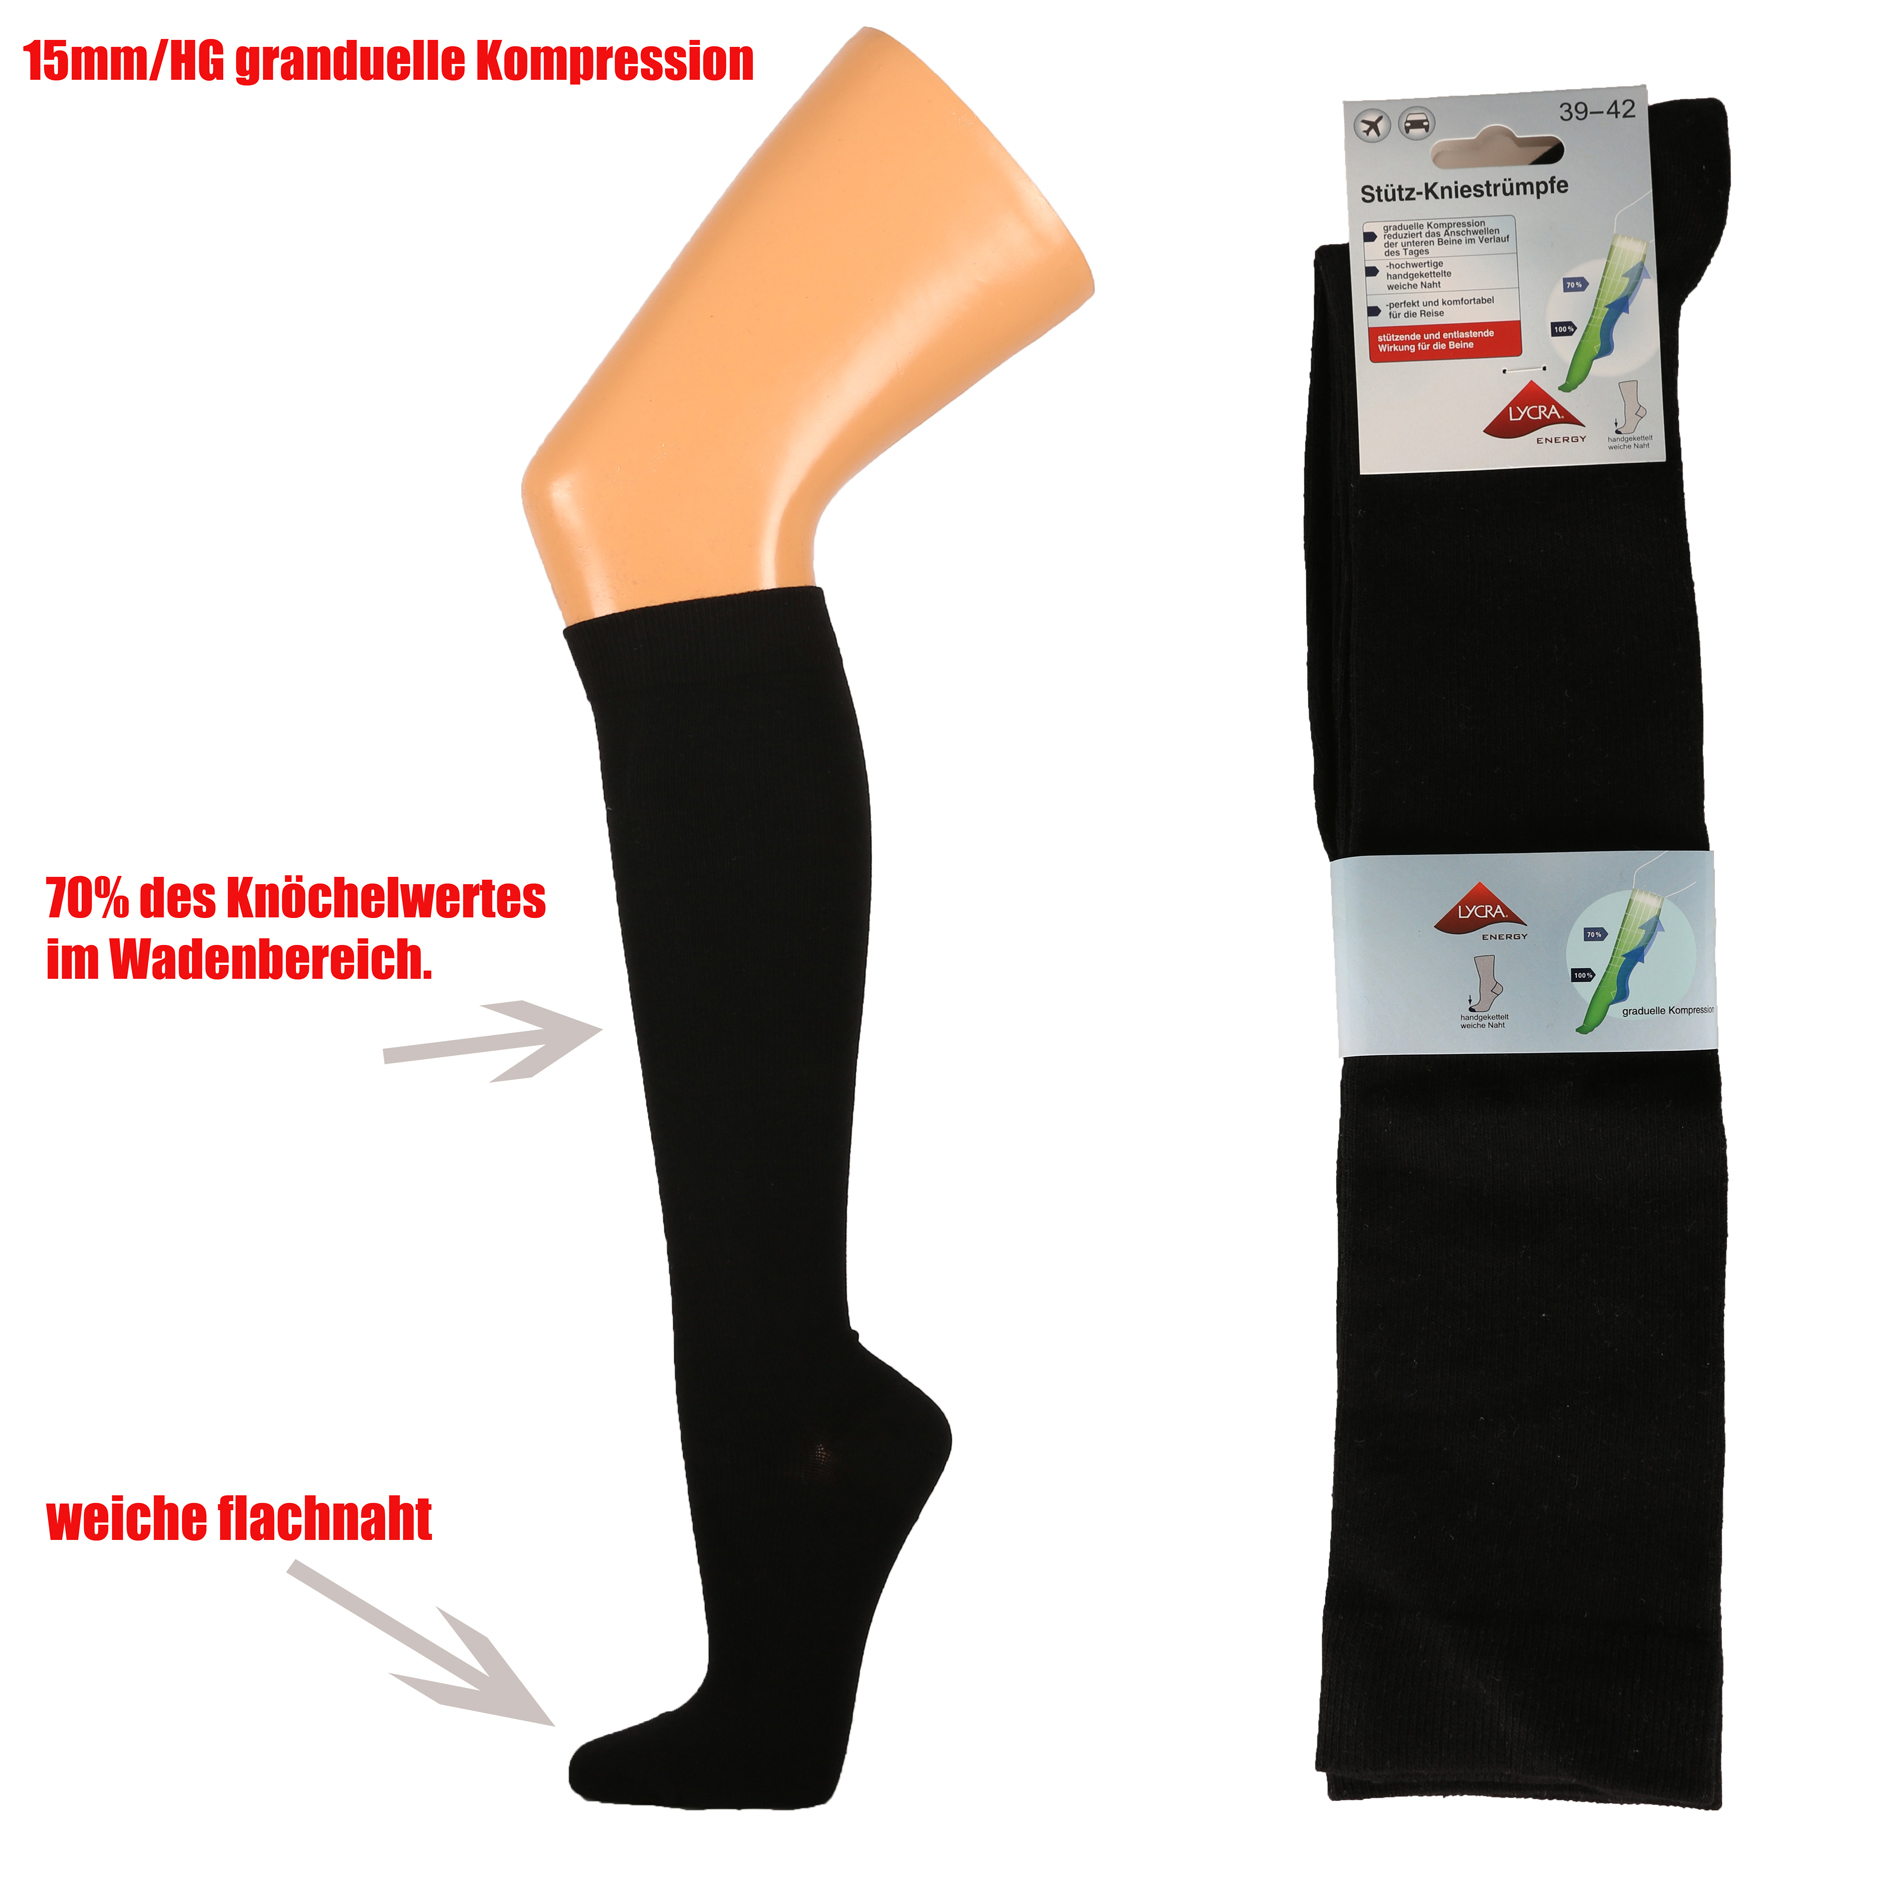 1 Paar Damen Stütz Knie Stulpen Kompressionsstulpen für die Venen Grau S/M